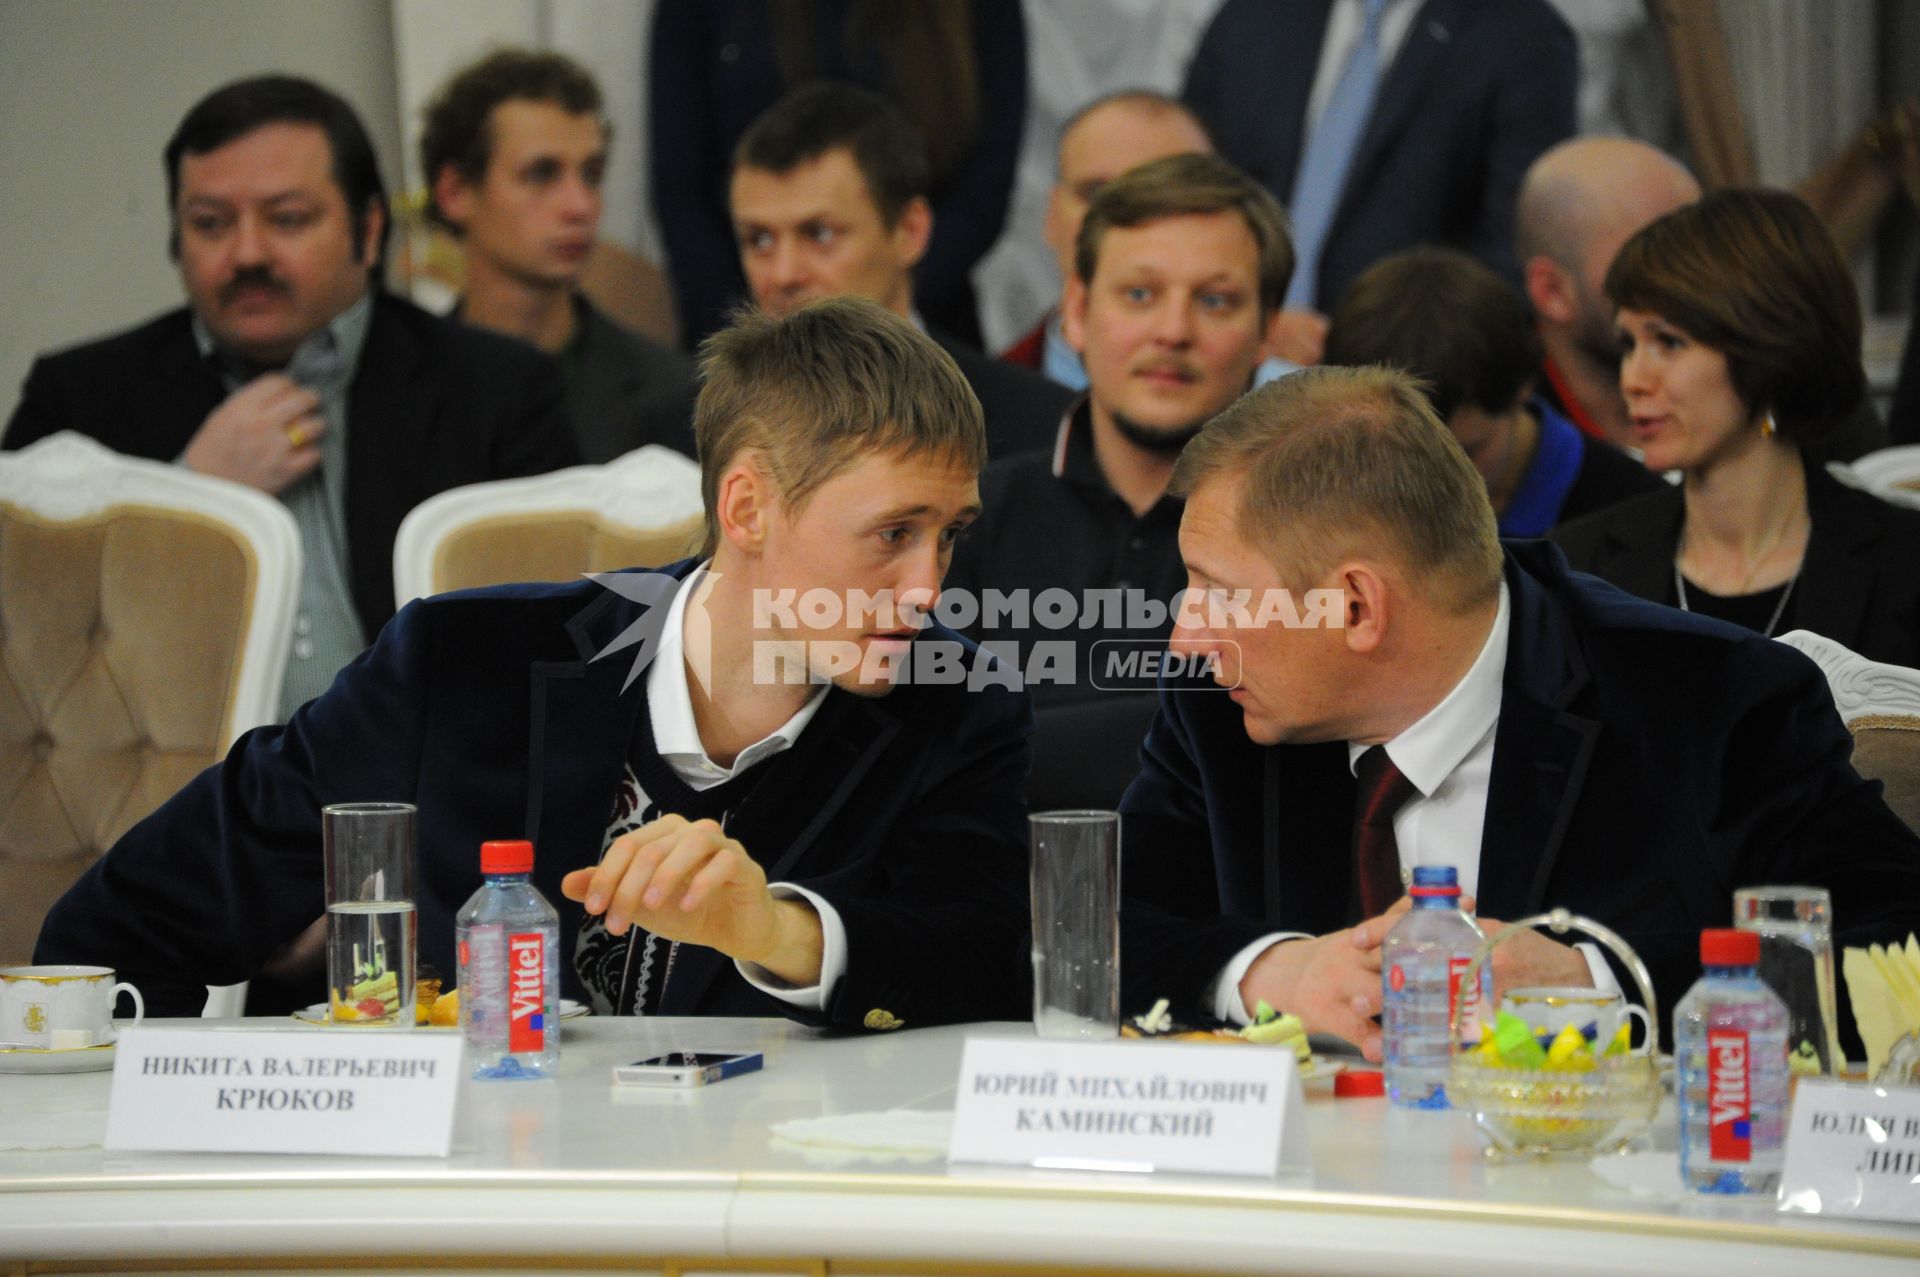 Мэр Москвы встретился с победителями и призерами Олимпийских игр в Сочи. На снимке: лыжник Никита Крюков (слева) и его тренер Юрий Каминский.